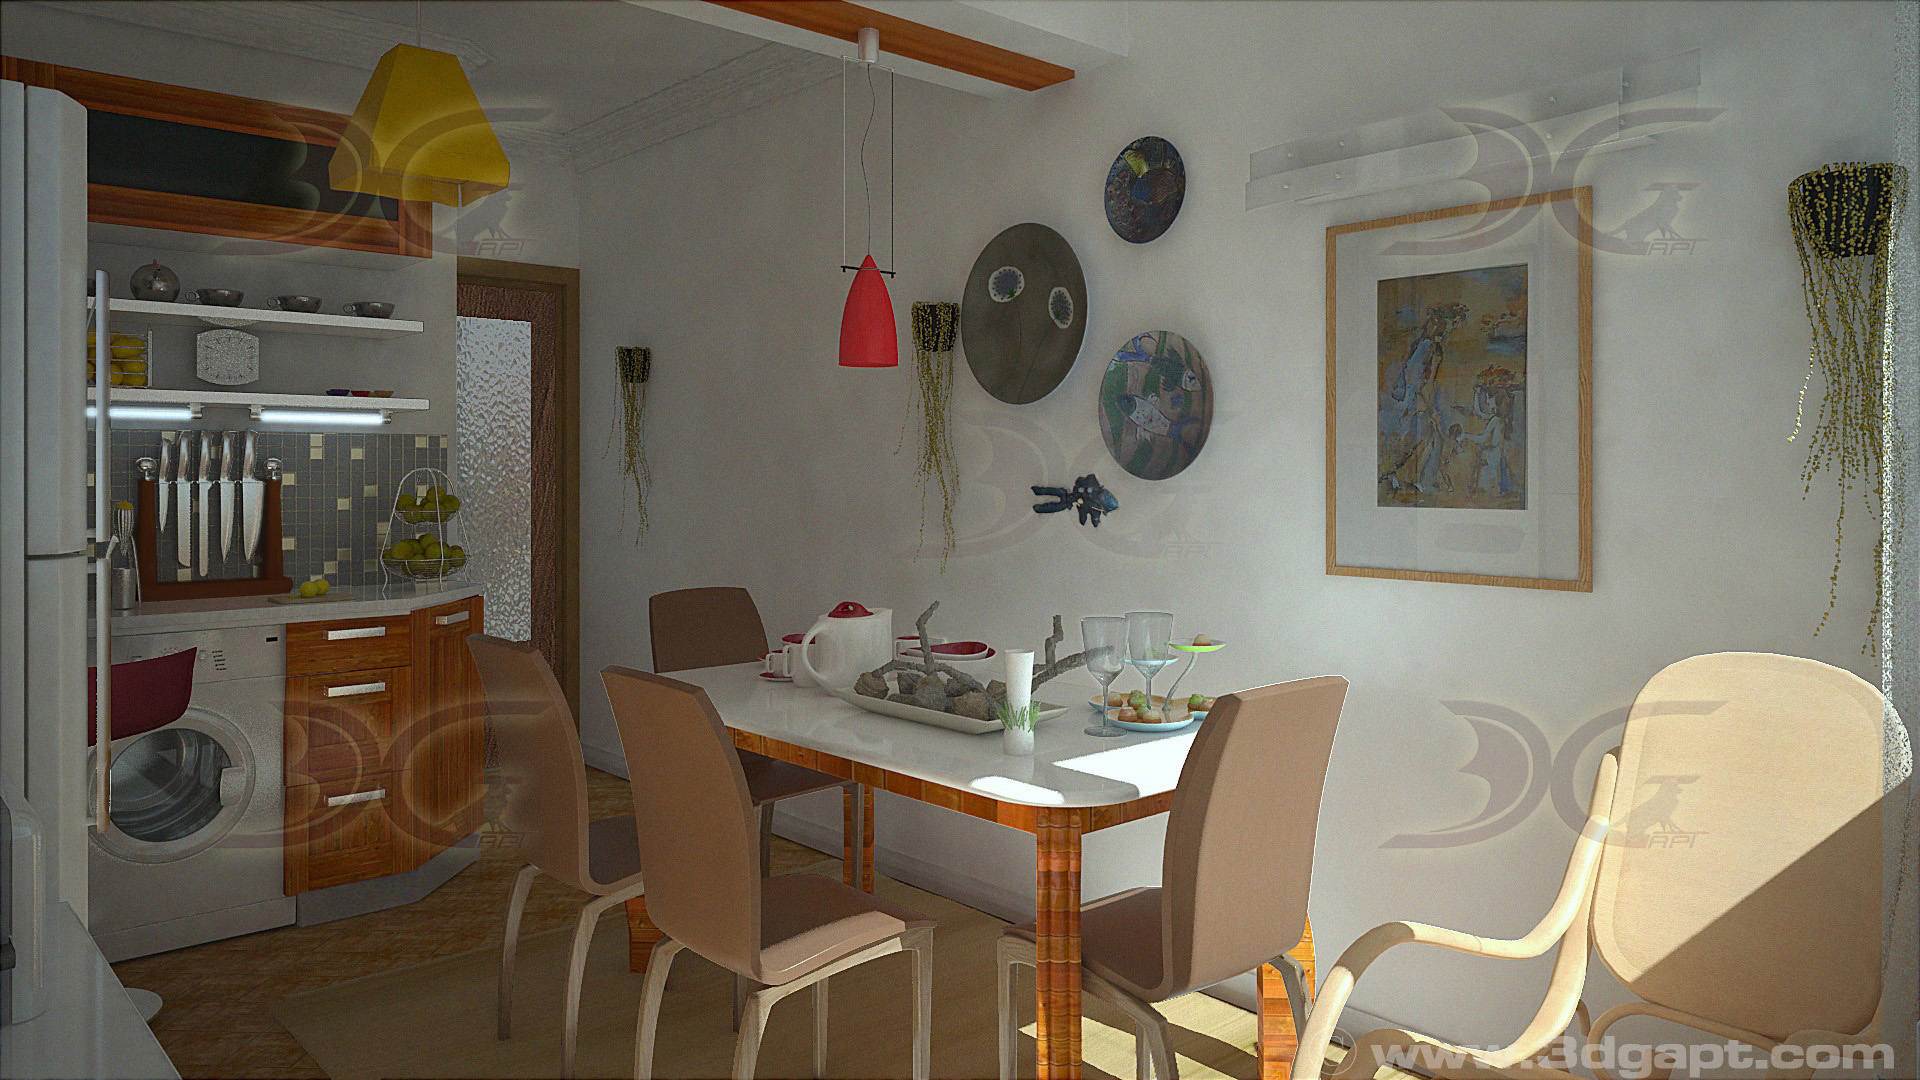 architecture interior kitchen-3versions 18